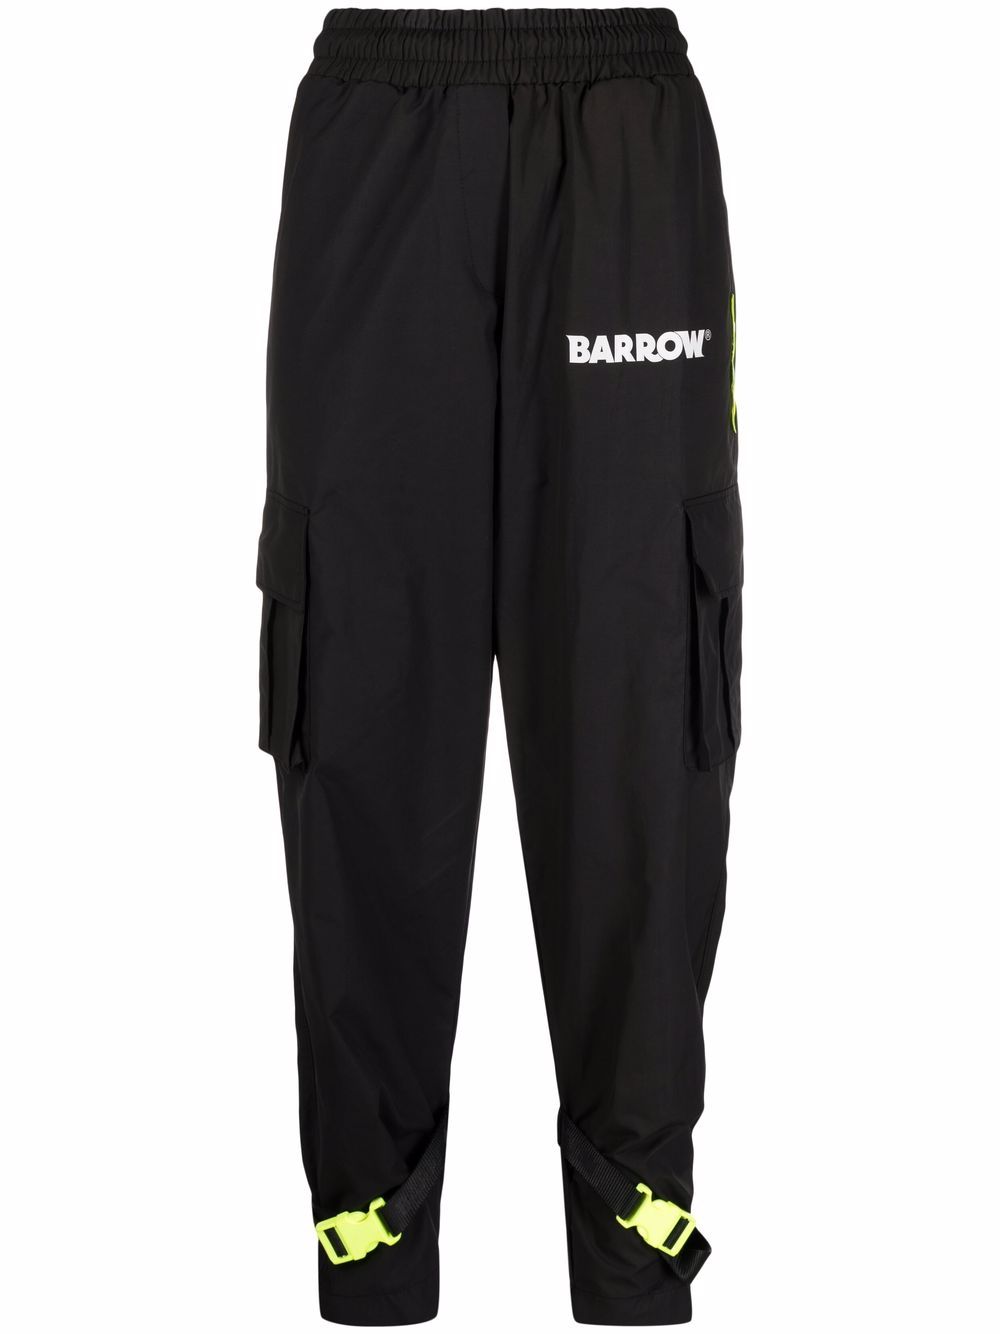 фото Barrow спортивные брюки с логотипом и пряжками